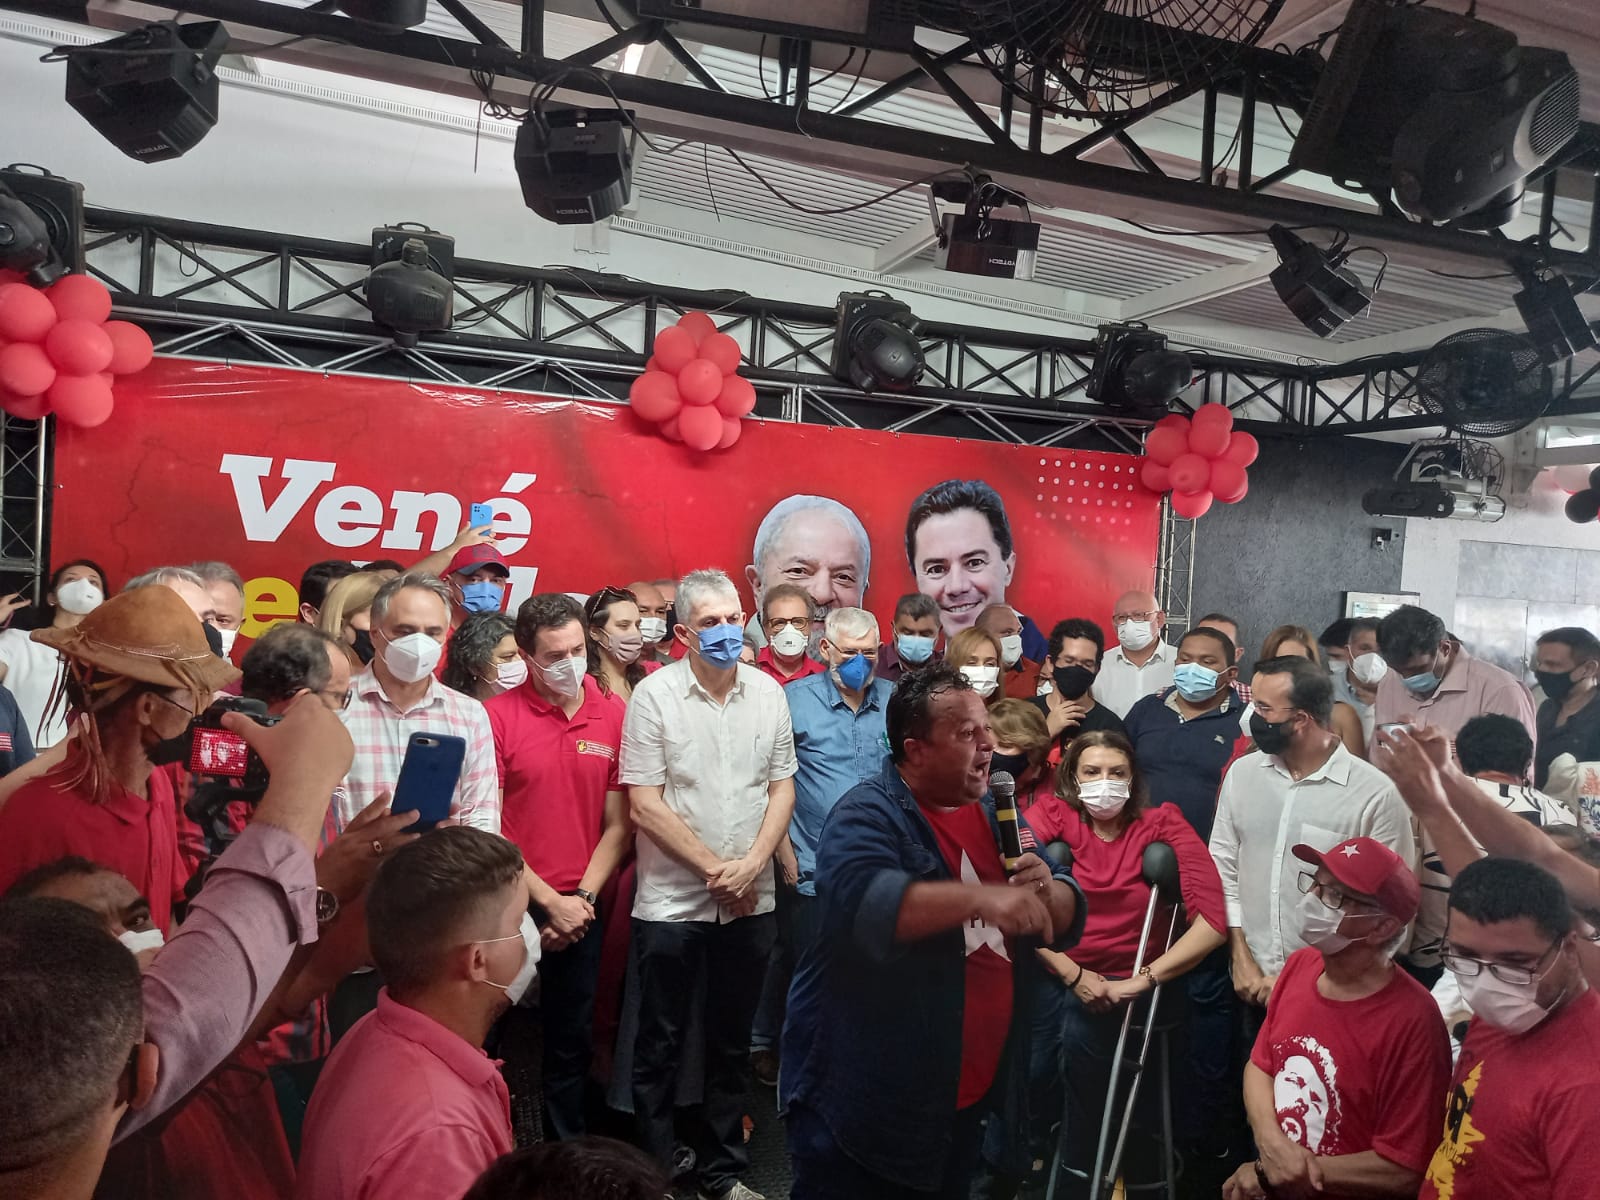 "Os paraibanos precisam de muito mais", afirma Veneziano, dando o tom de pré-candidato de oposição ao governo